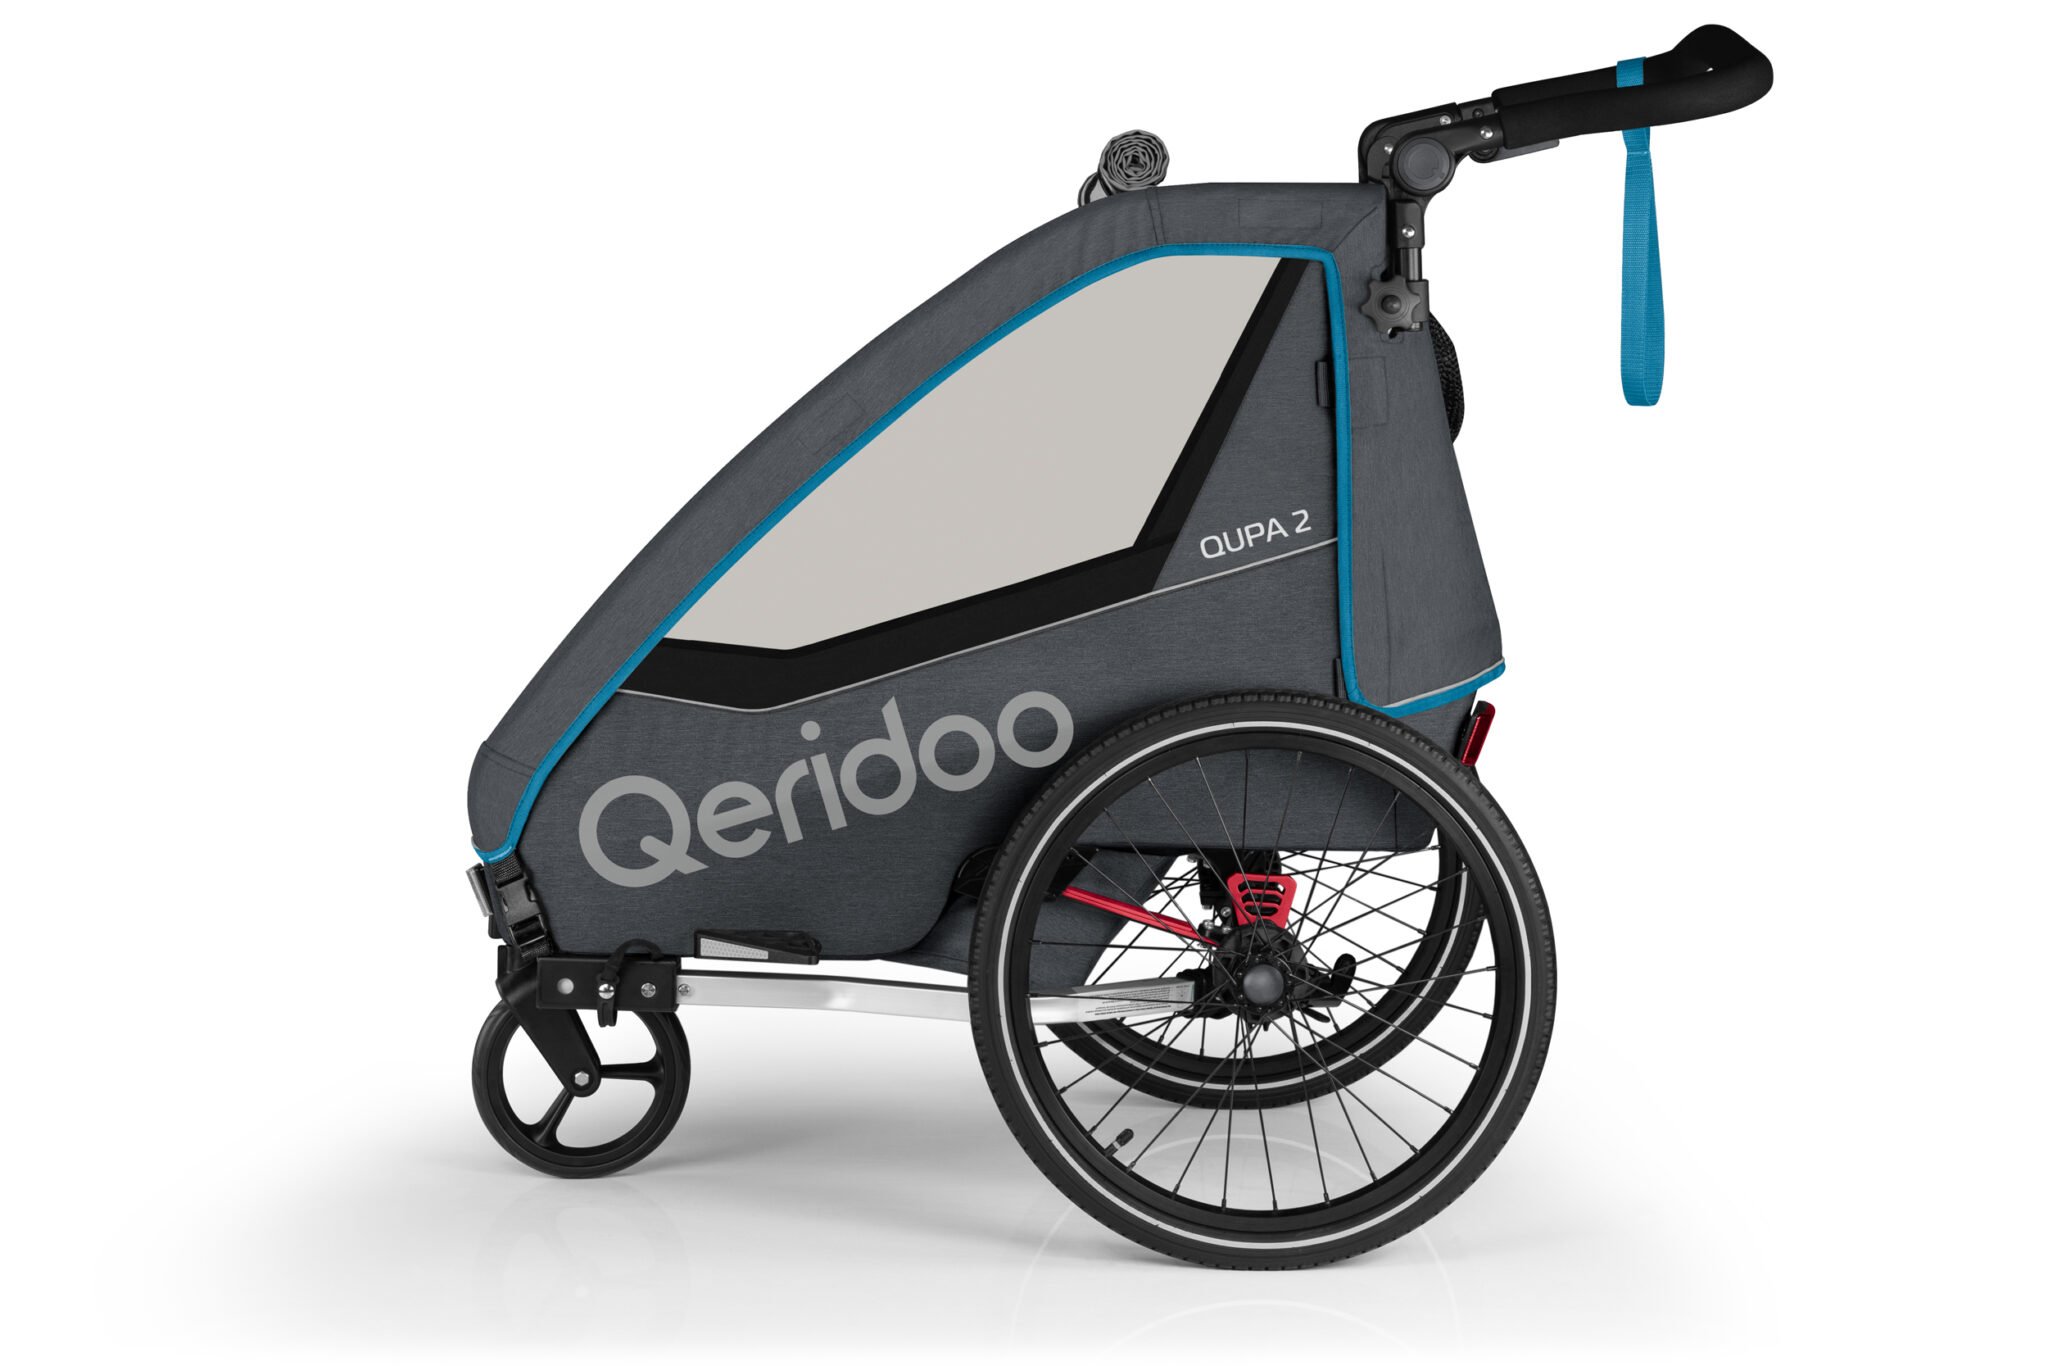 Produktbild von Qeridoo Qupa 2 Blau Q-QUP2-22-BL - Kinderfahrradanhänger mit Federung, Hand-Parkbremse und Buggyrad